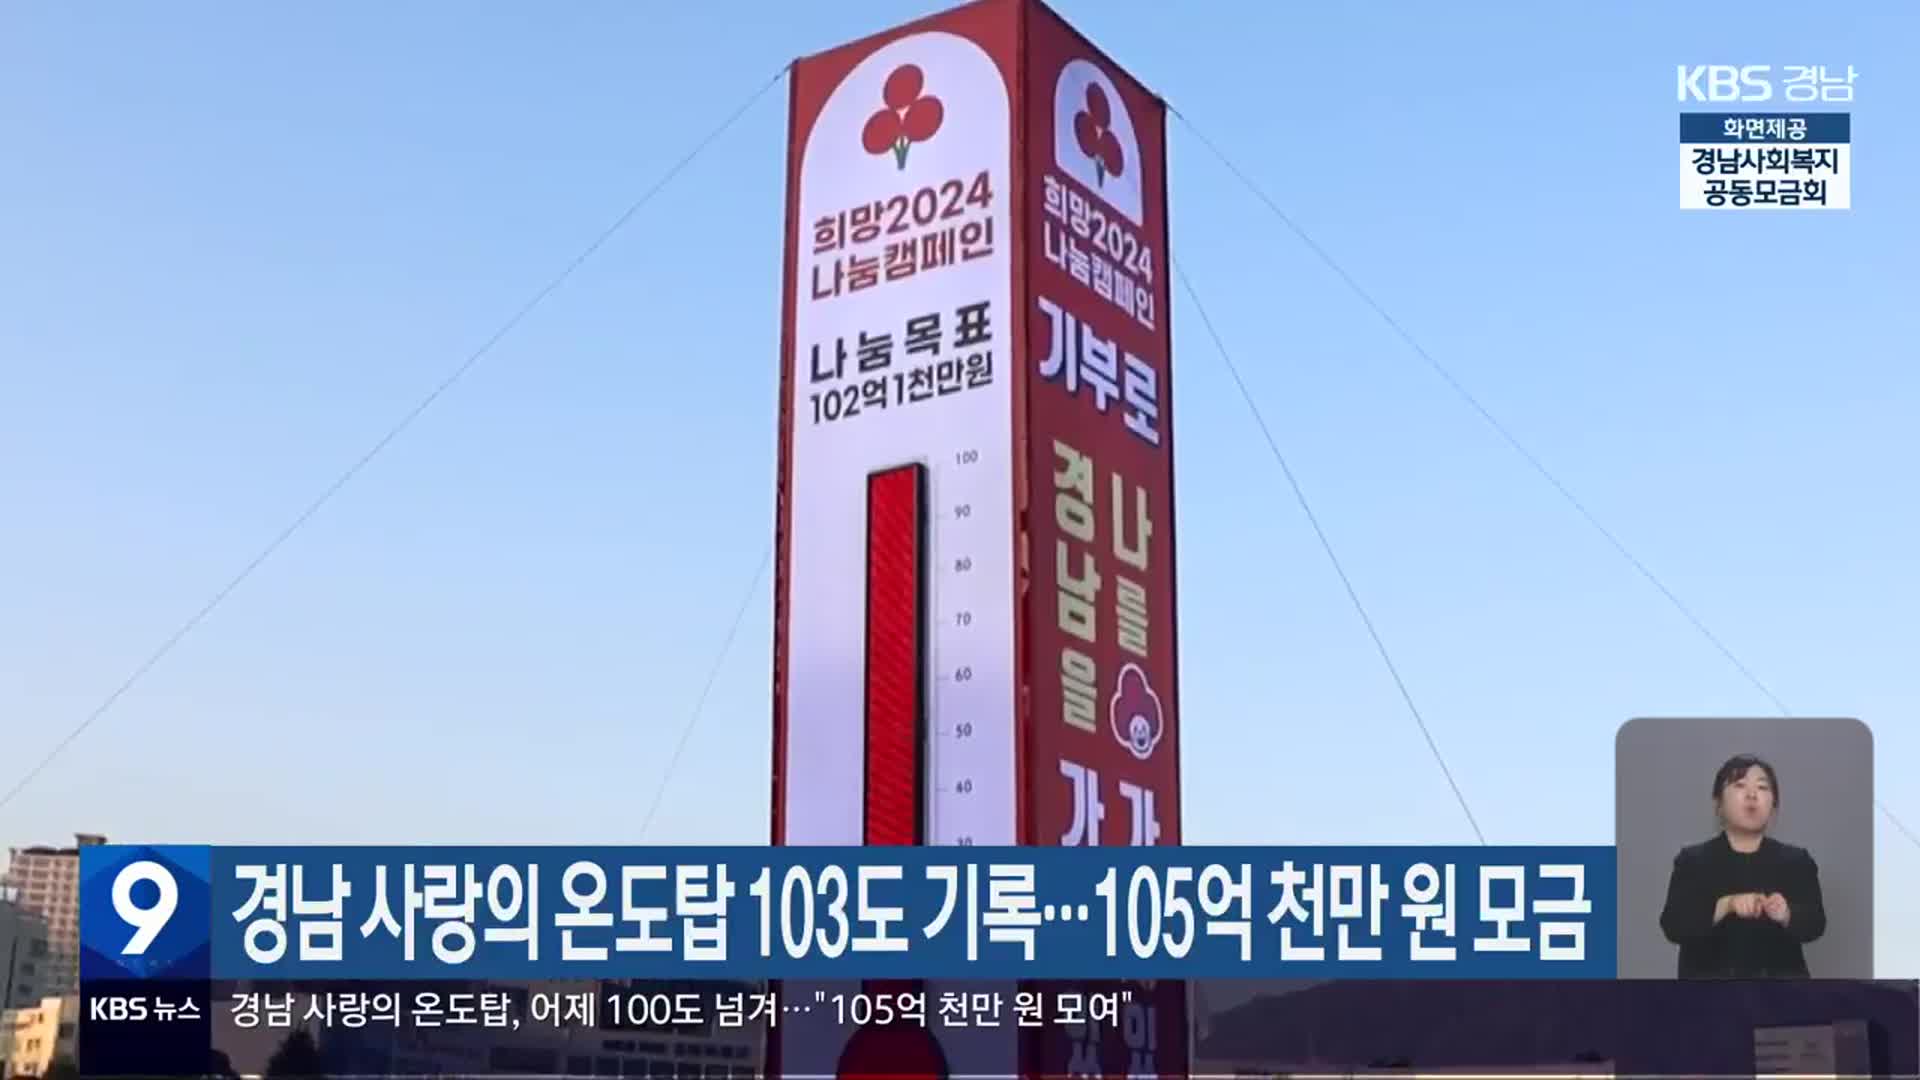 경남 사랑의 온도탑 103도 기록…105억 천만 원 모금